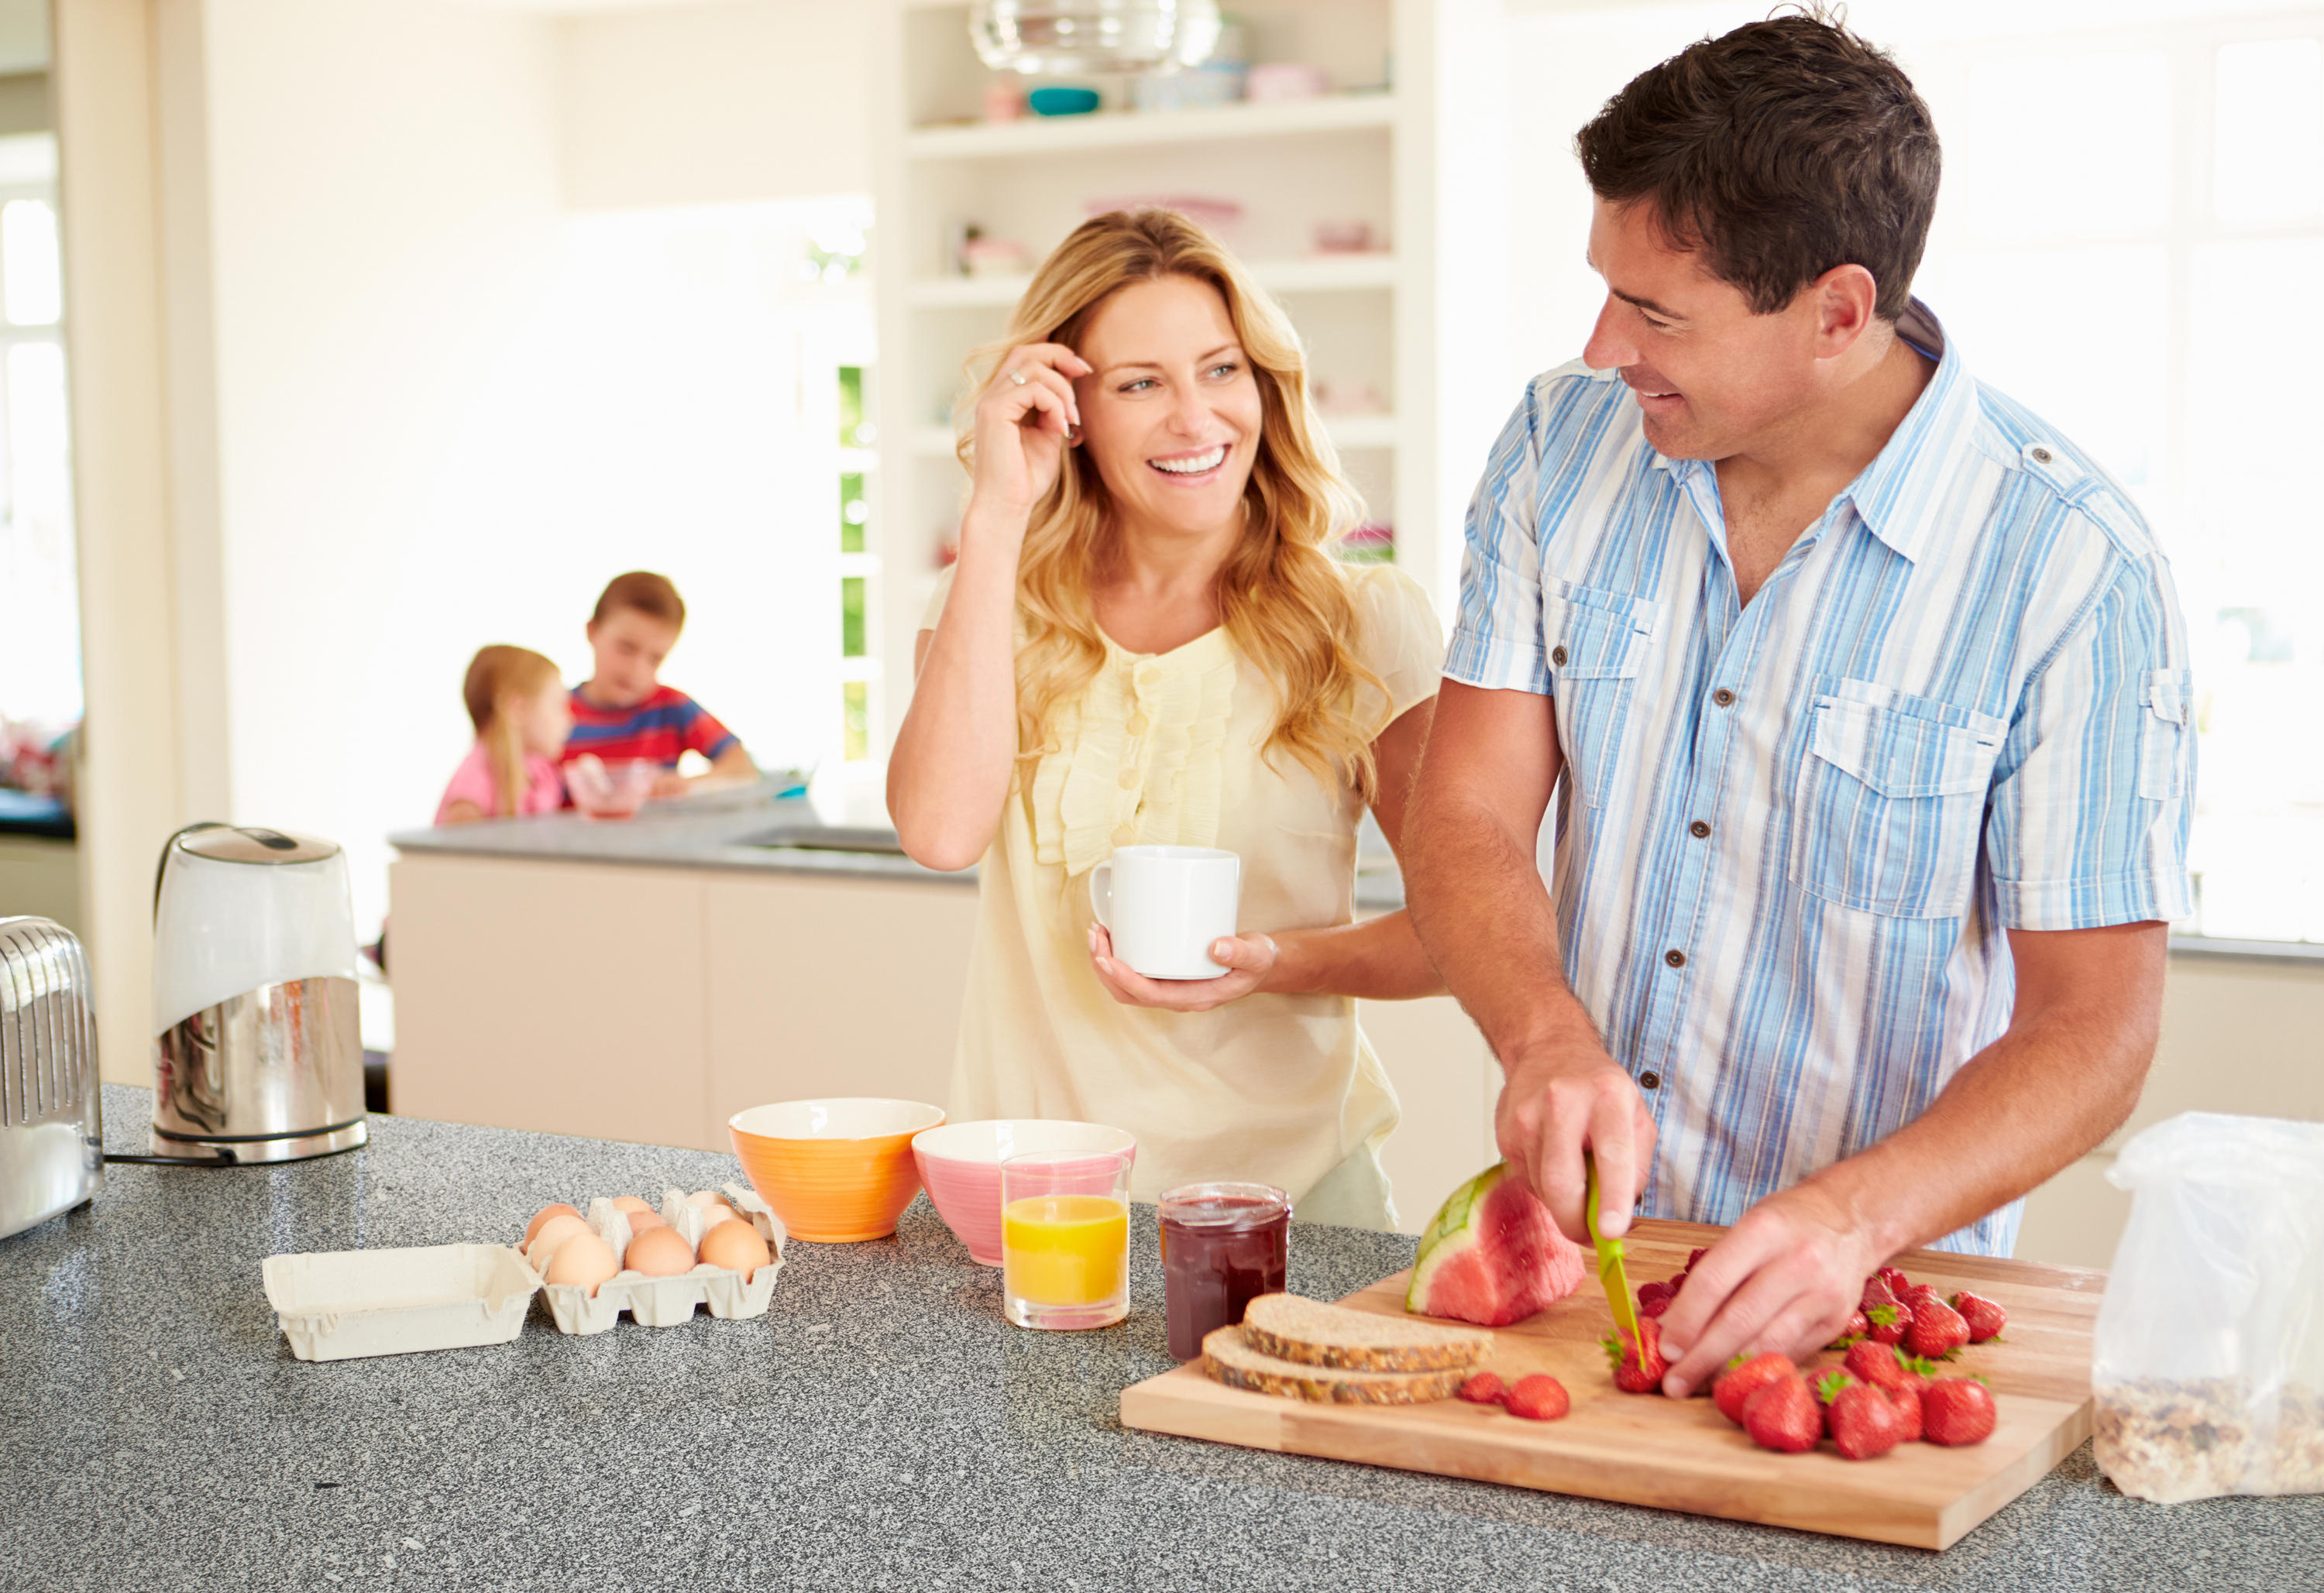 Муж помогает вставлять жене. Семья на кухне. Мужчина и женщина завтракают. Счастливая семья на кухне. Семья кухня обед.